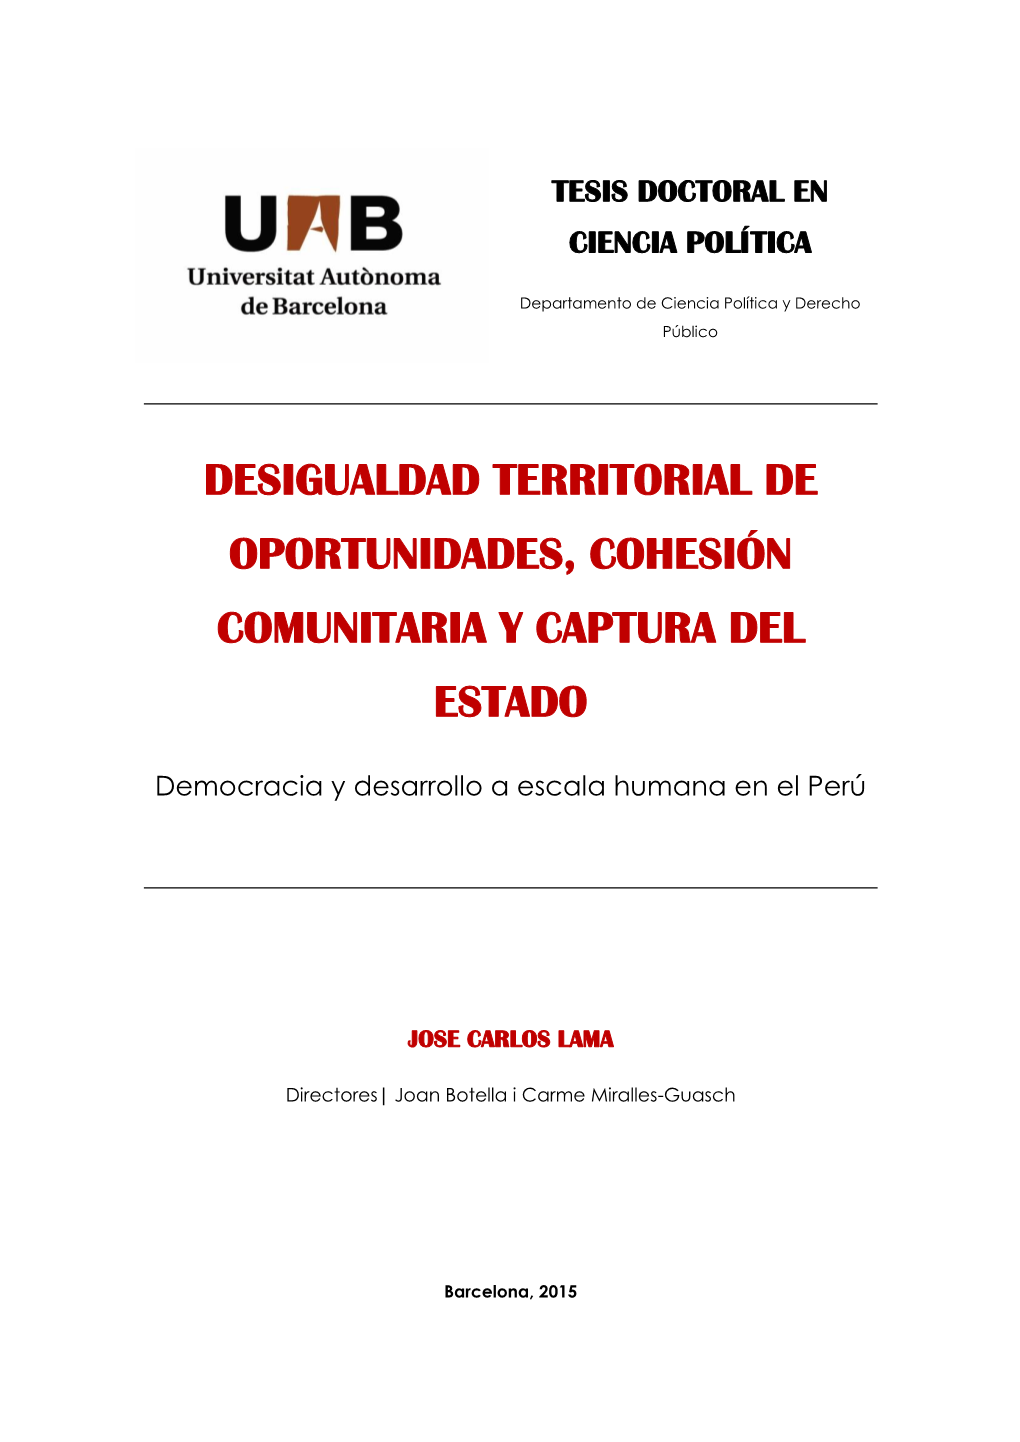 Desigualdad Territorial De Oportunidades, Cohesión Comunitaria Y Captura Del Estado